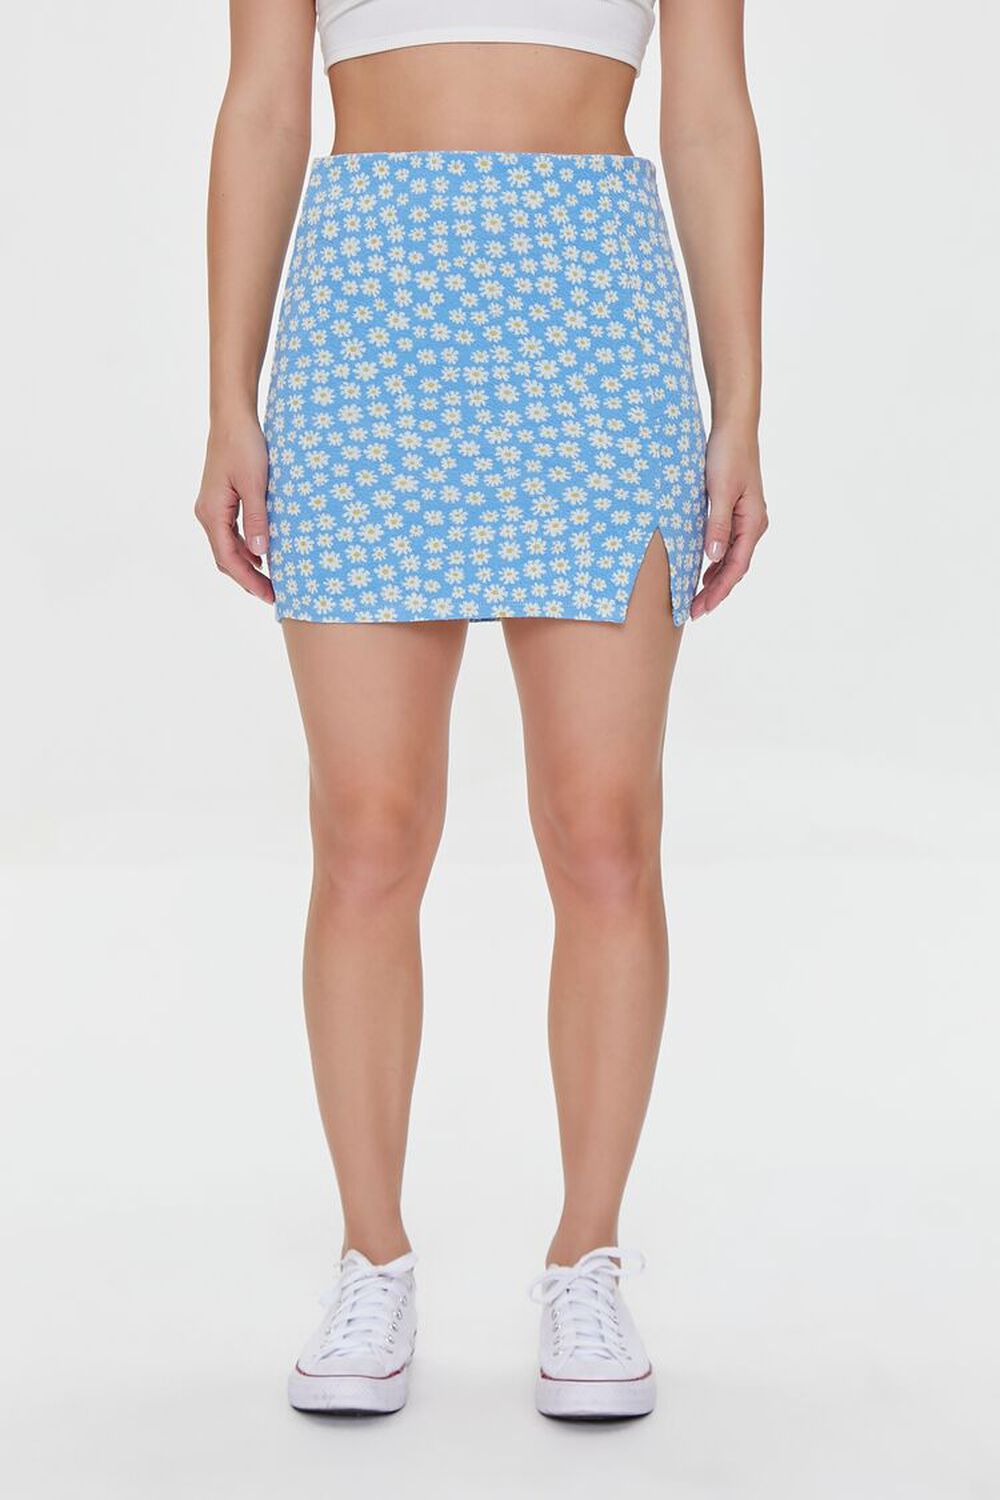 BLUE/MULTI Floral Print Mini Skirt, image 2